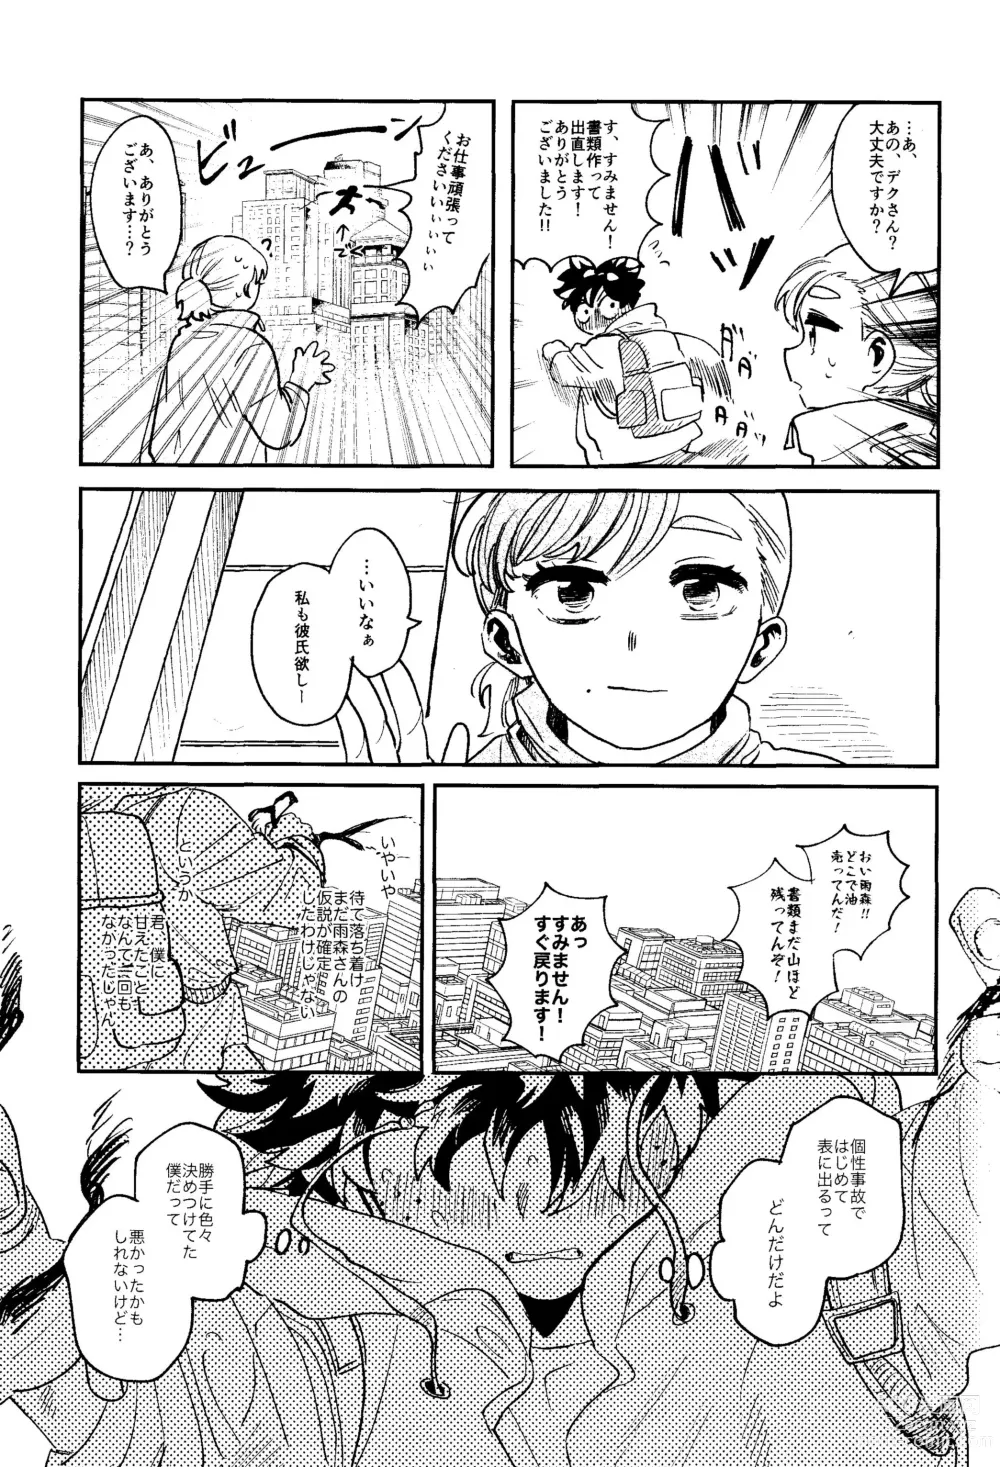 Page 64 of doujinshi HERO taru mono